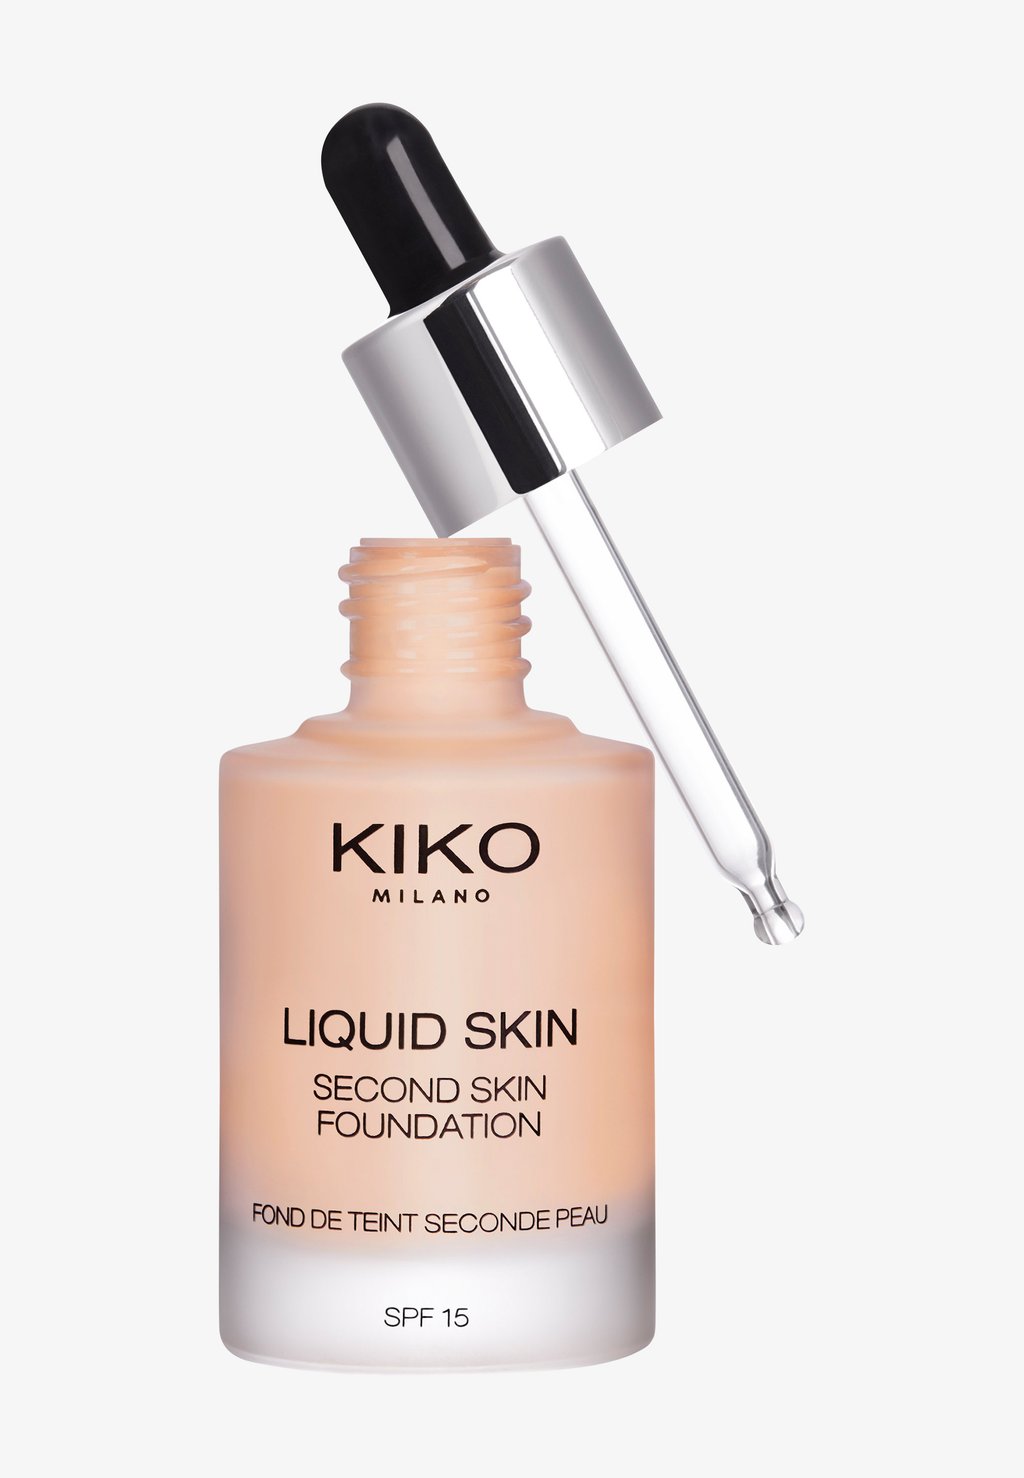 Тональный крем Liquid Skin Second Skin Foundation KIKO Milano, цвет 15 warm beige